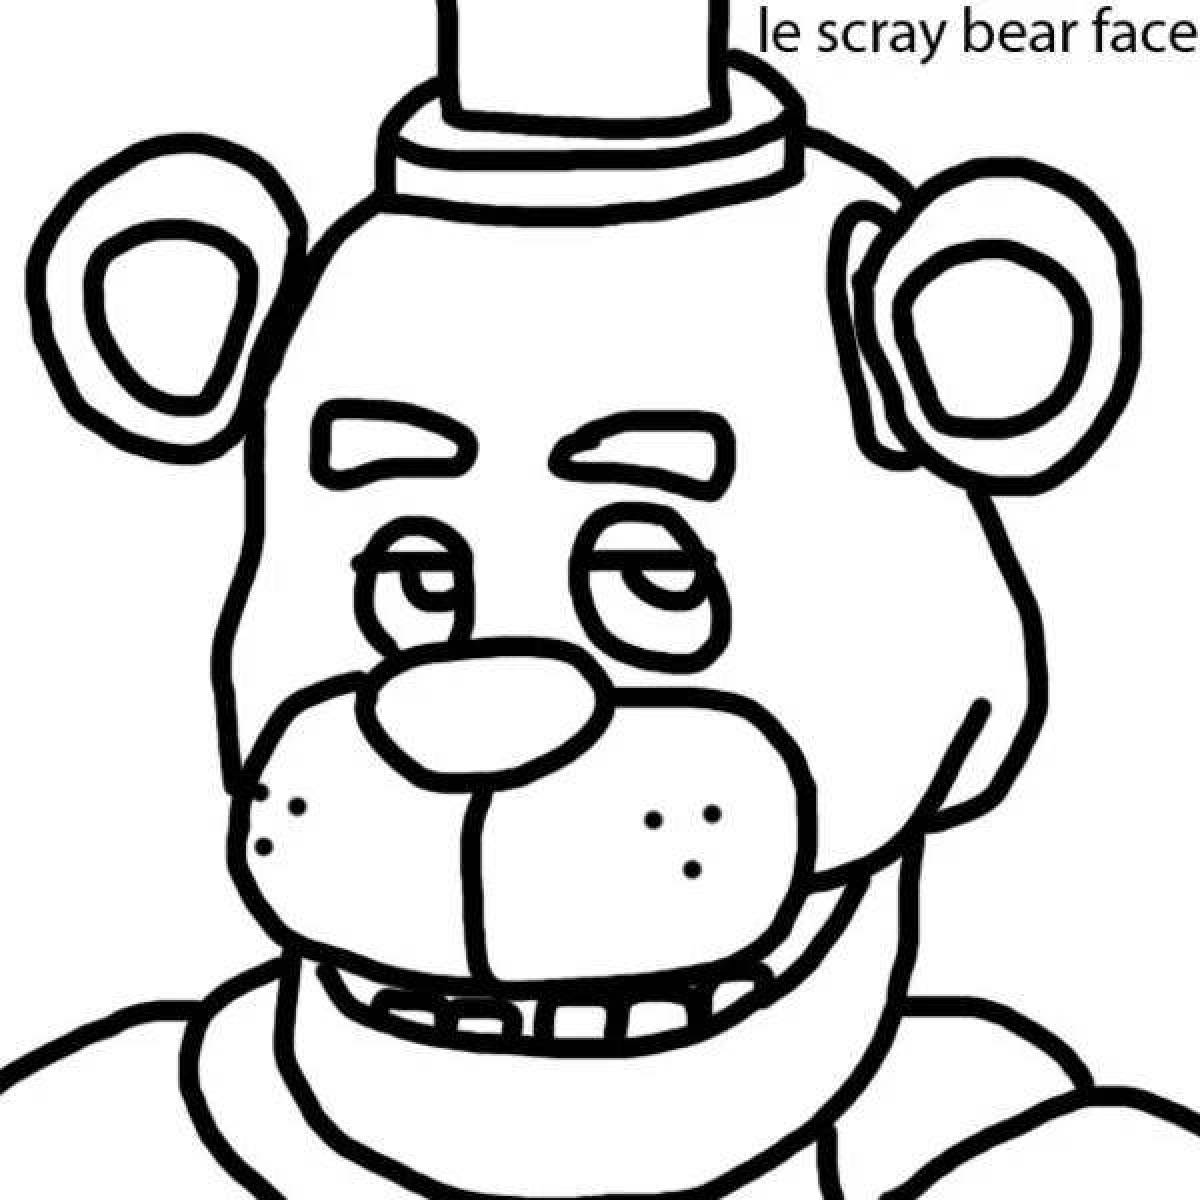 Freddy bear humorous coloring book